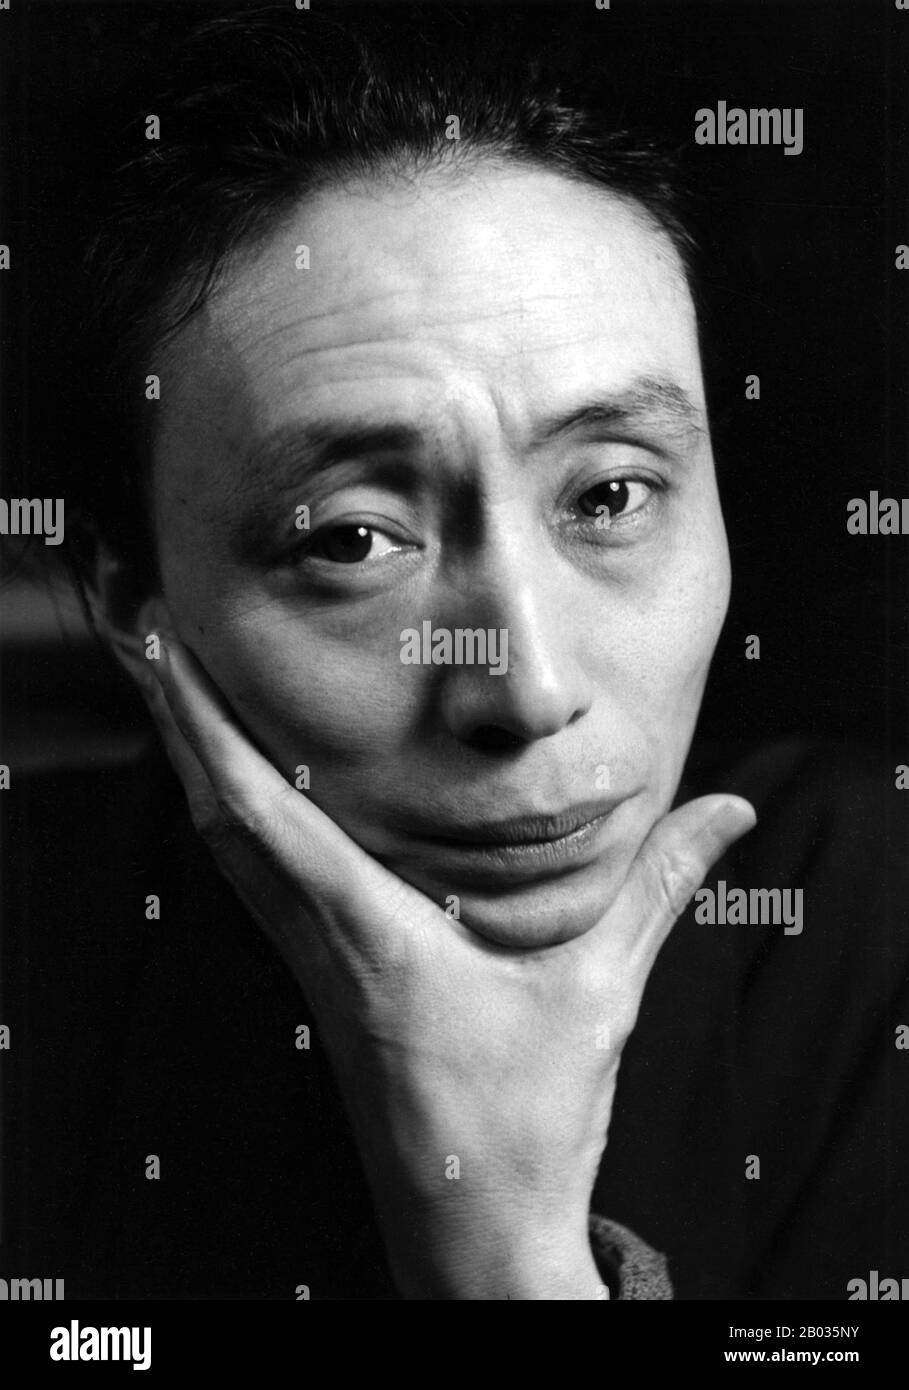 Jun Takami (30. Januar 1907 - 17. August 1965) war der Name eines japanischen Romanschriftstellers und Dichters, der in der Showa-Zeit Japans aktiv war. Sein richtiger Name war Takami Yoshio. Ken Domon (25. Oktober 1909 - 15. September 1990) ist einer der renommiertesten japanischen Fotografen des 20. Jahrhunderts. Er wird am meisten als Fotojournalist gefeiert, obwohl er möglicherweise am produktivsten als Fotograf buddhistischer Tempel und Statthaltereien gewesen sein könnte. Stockfoto